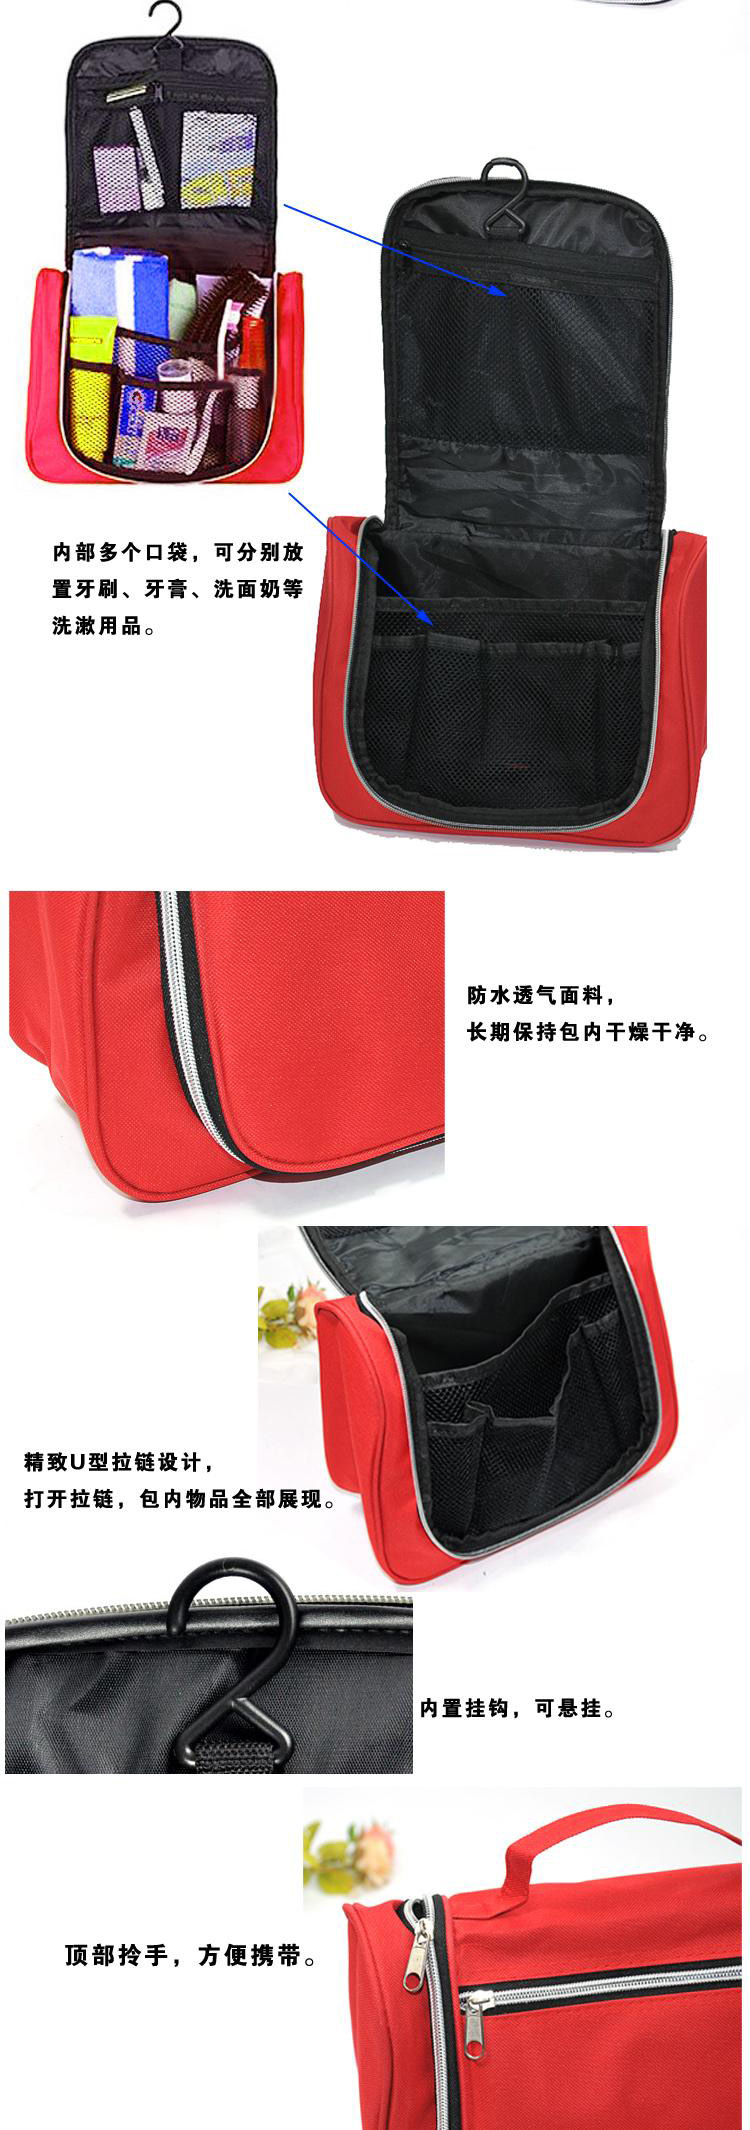 普润 韩国包中包 双拉链收纳包 包中包收纳整理袋 创意化妆包 大号洗漱包 黑色	